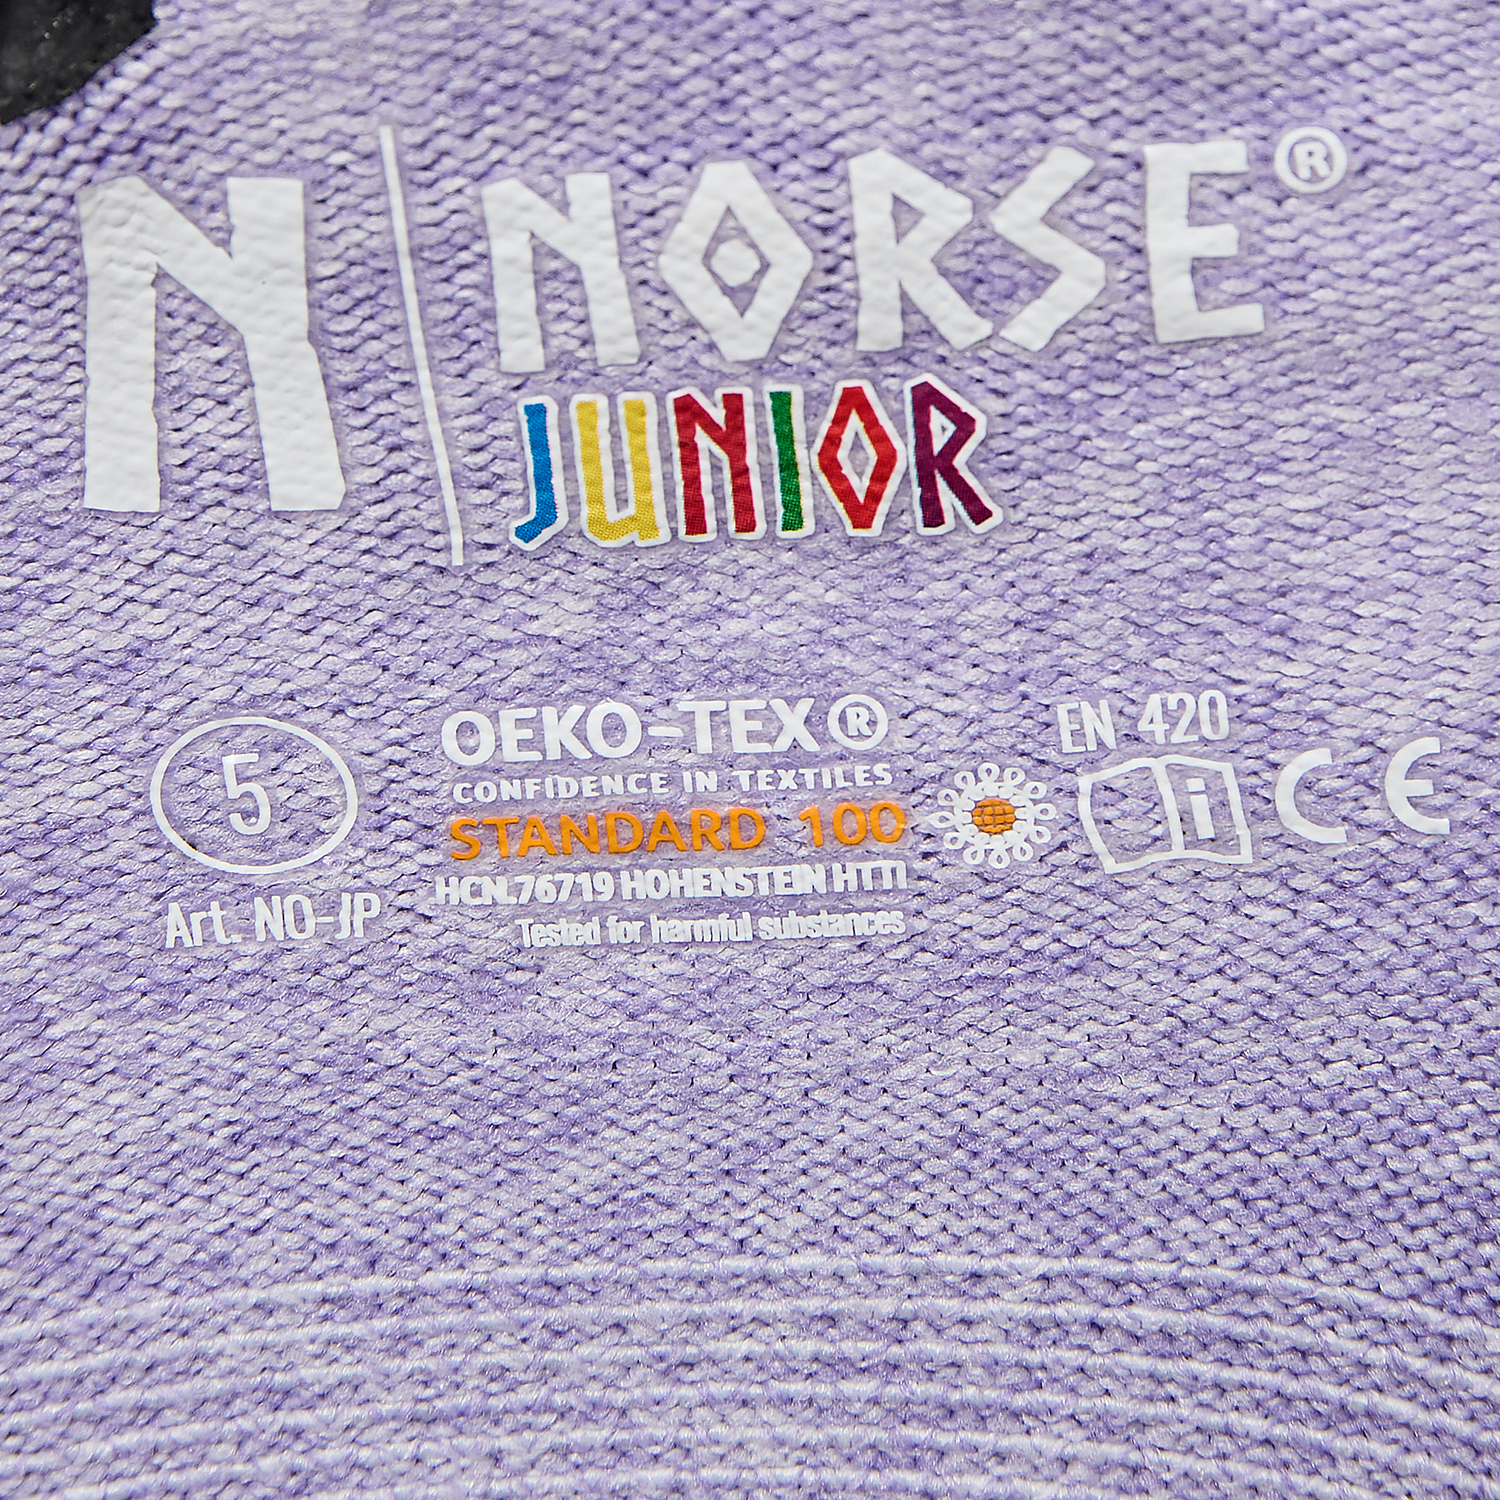 NORSE Junior Purple children's gloves size 4